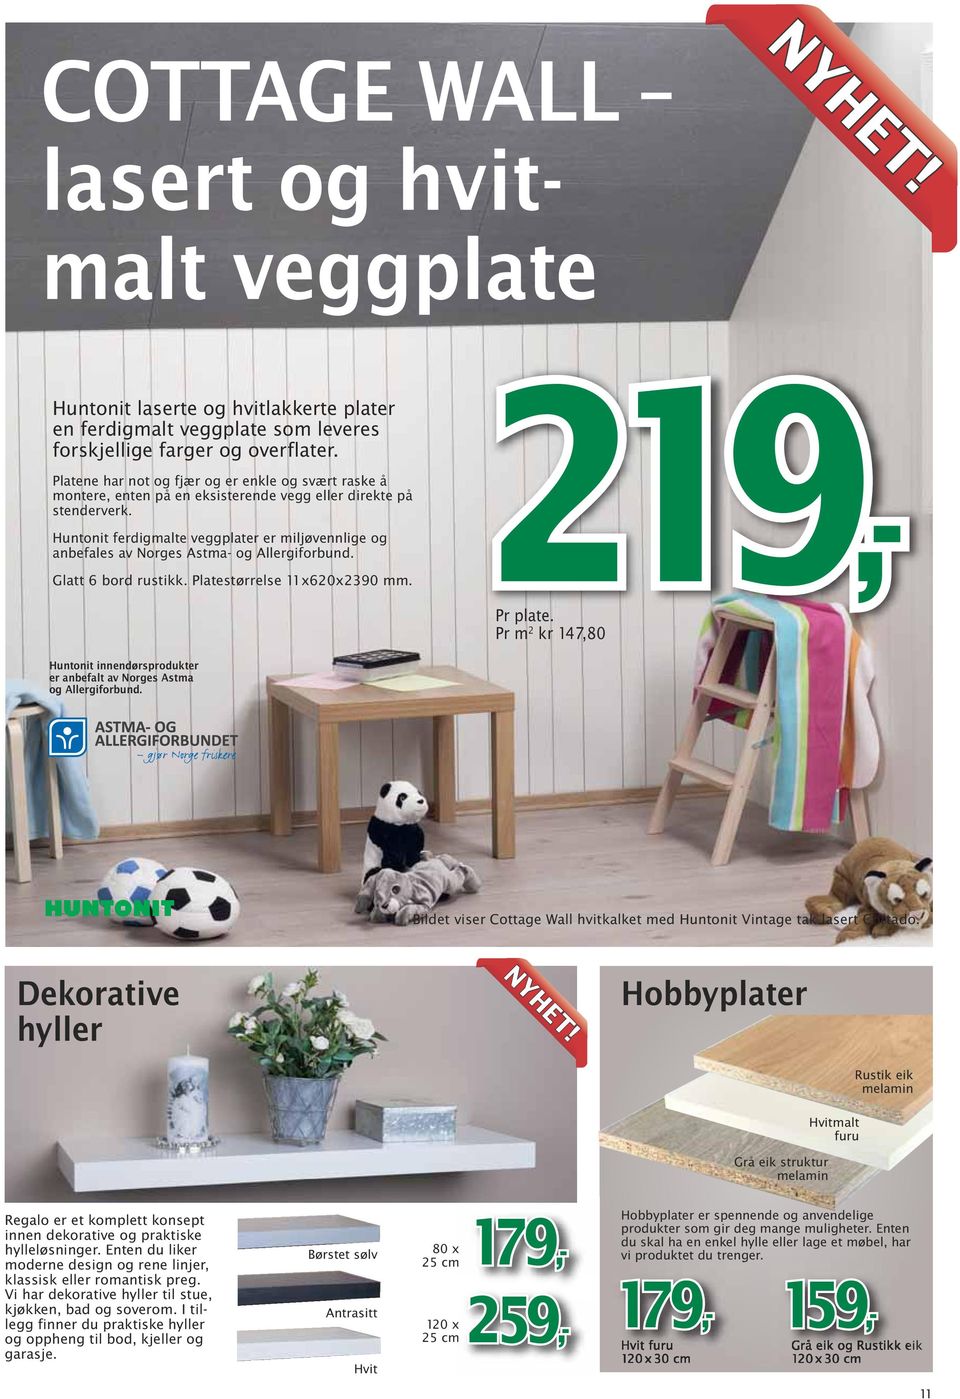 Huntonit ferdigmalte veggplater er miljøvennlige og anbefales av Norges Astma- og Allergiforbund. Glatt 6 bord rustikk. Platestørrelse 11x620x2390 mm. 219,- Pr plate.